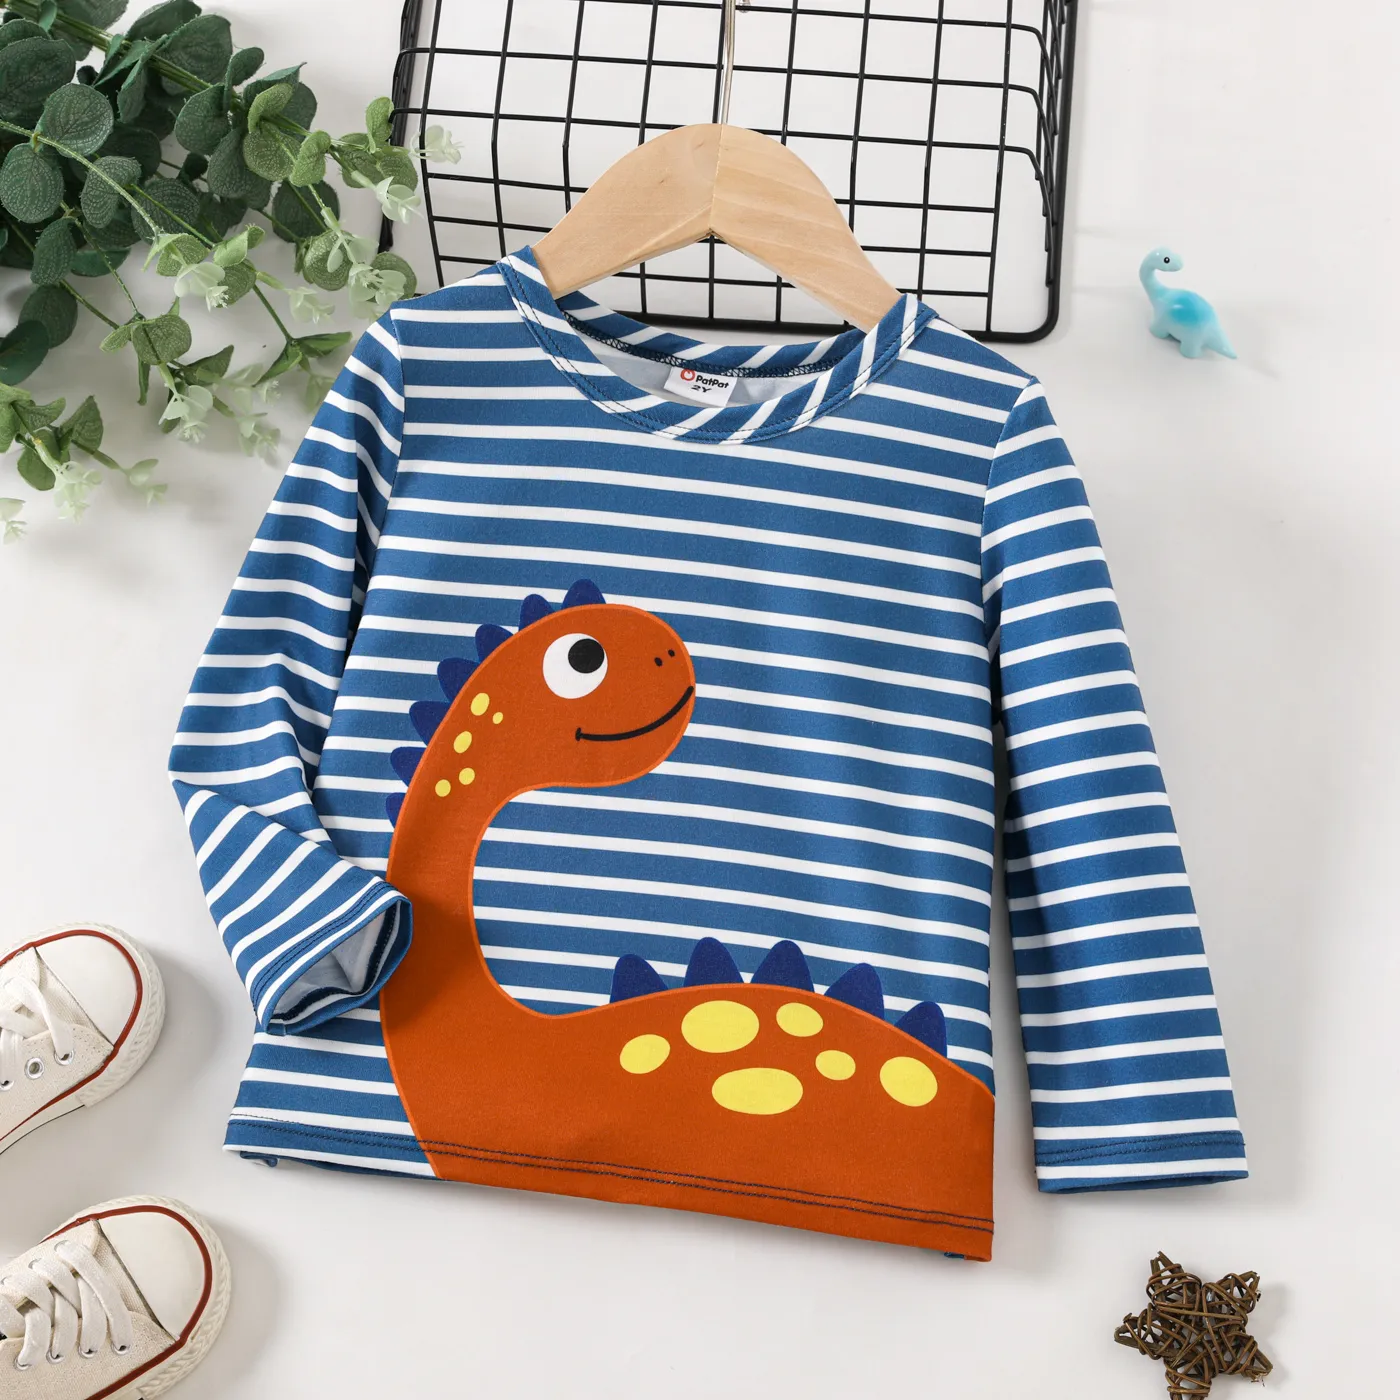 Ensemble De Tee-shirts Pour Enfants Avec Motif Animalier Enfantin Et Coutures En Tissu Lion